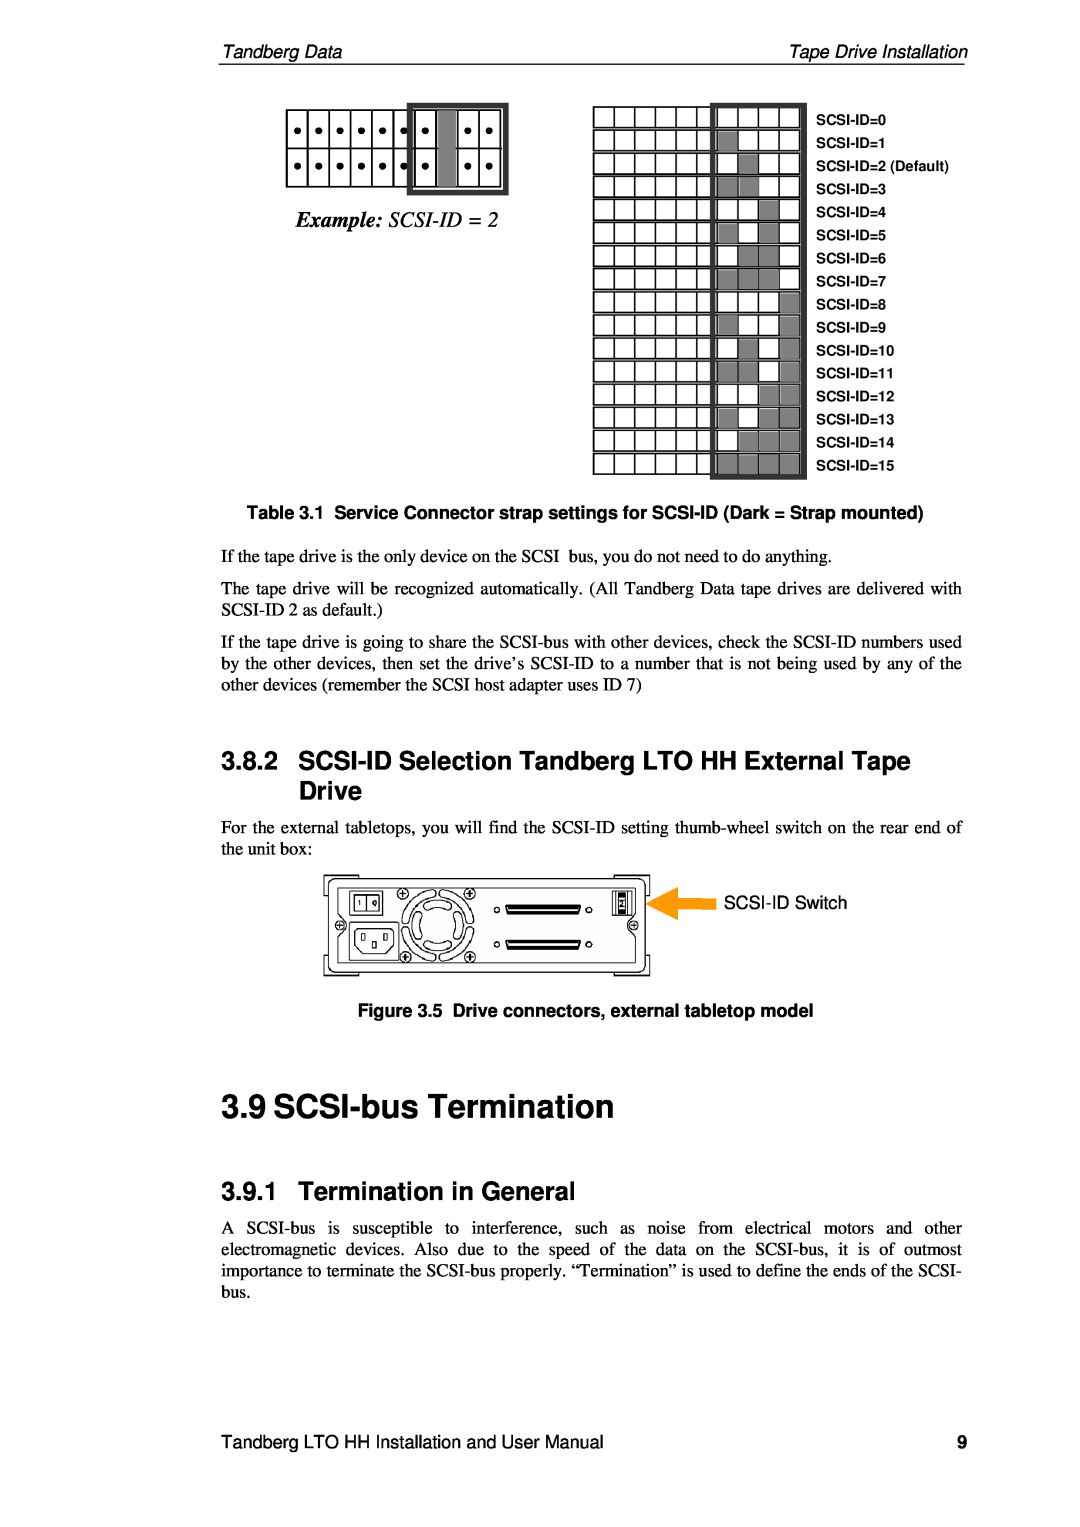 Tandberg Data LTO-2 HH, LTO-3 HH, LTO-1 HH SCSI-busTermination, Termination in General, Example SCSI-ID=, Tandberg Data 